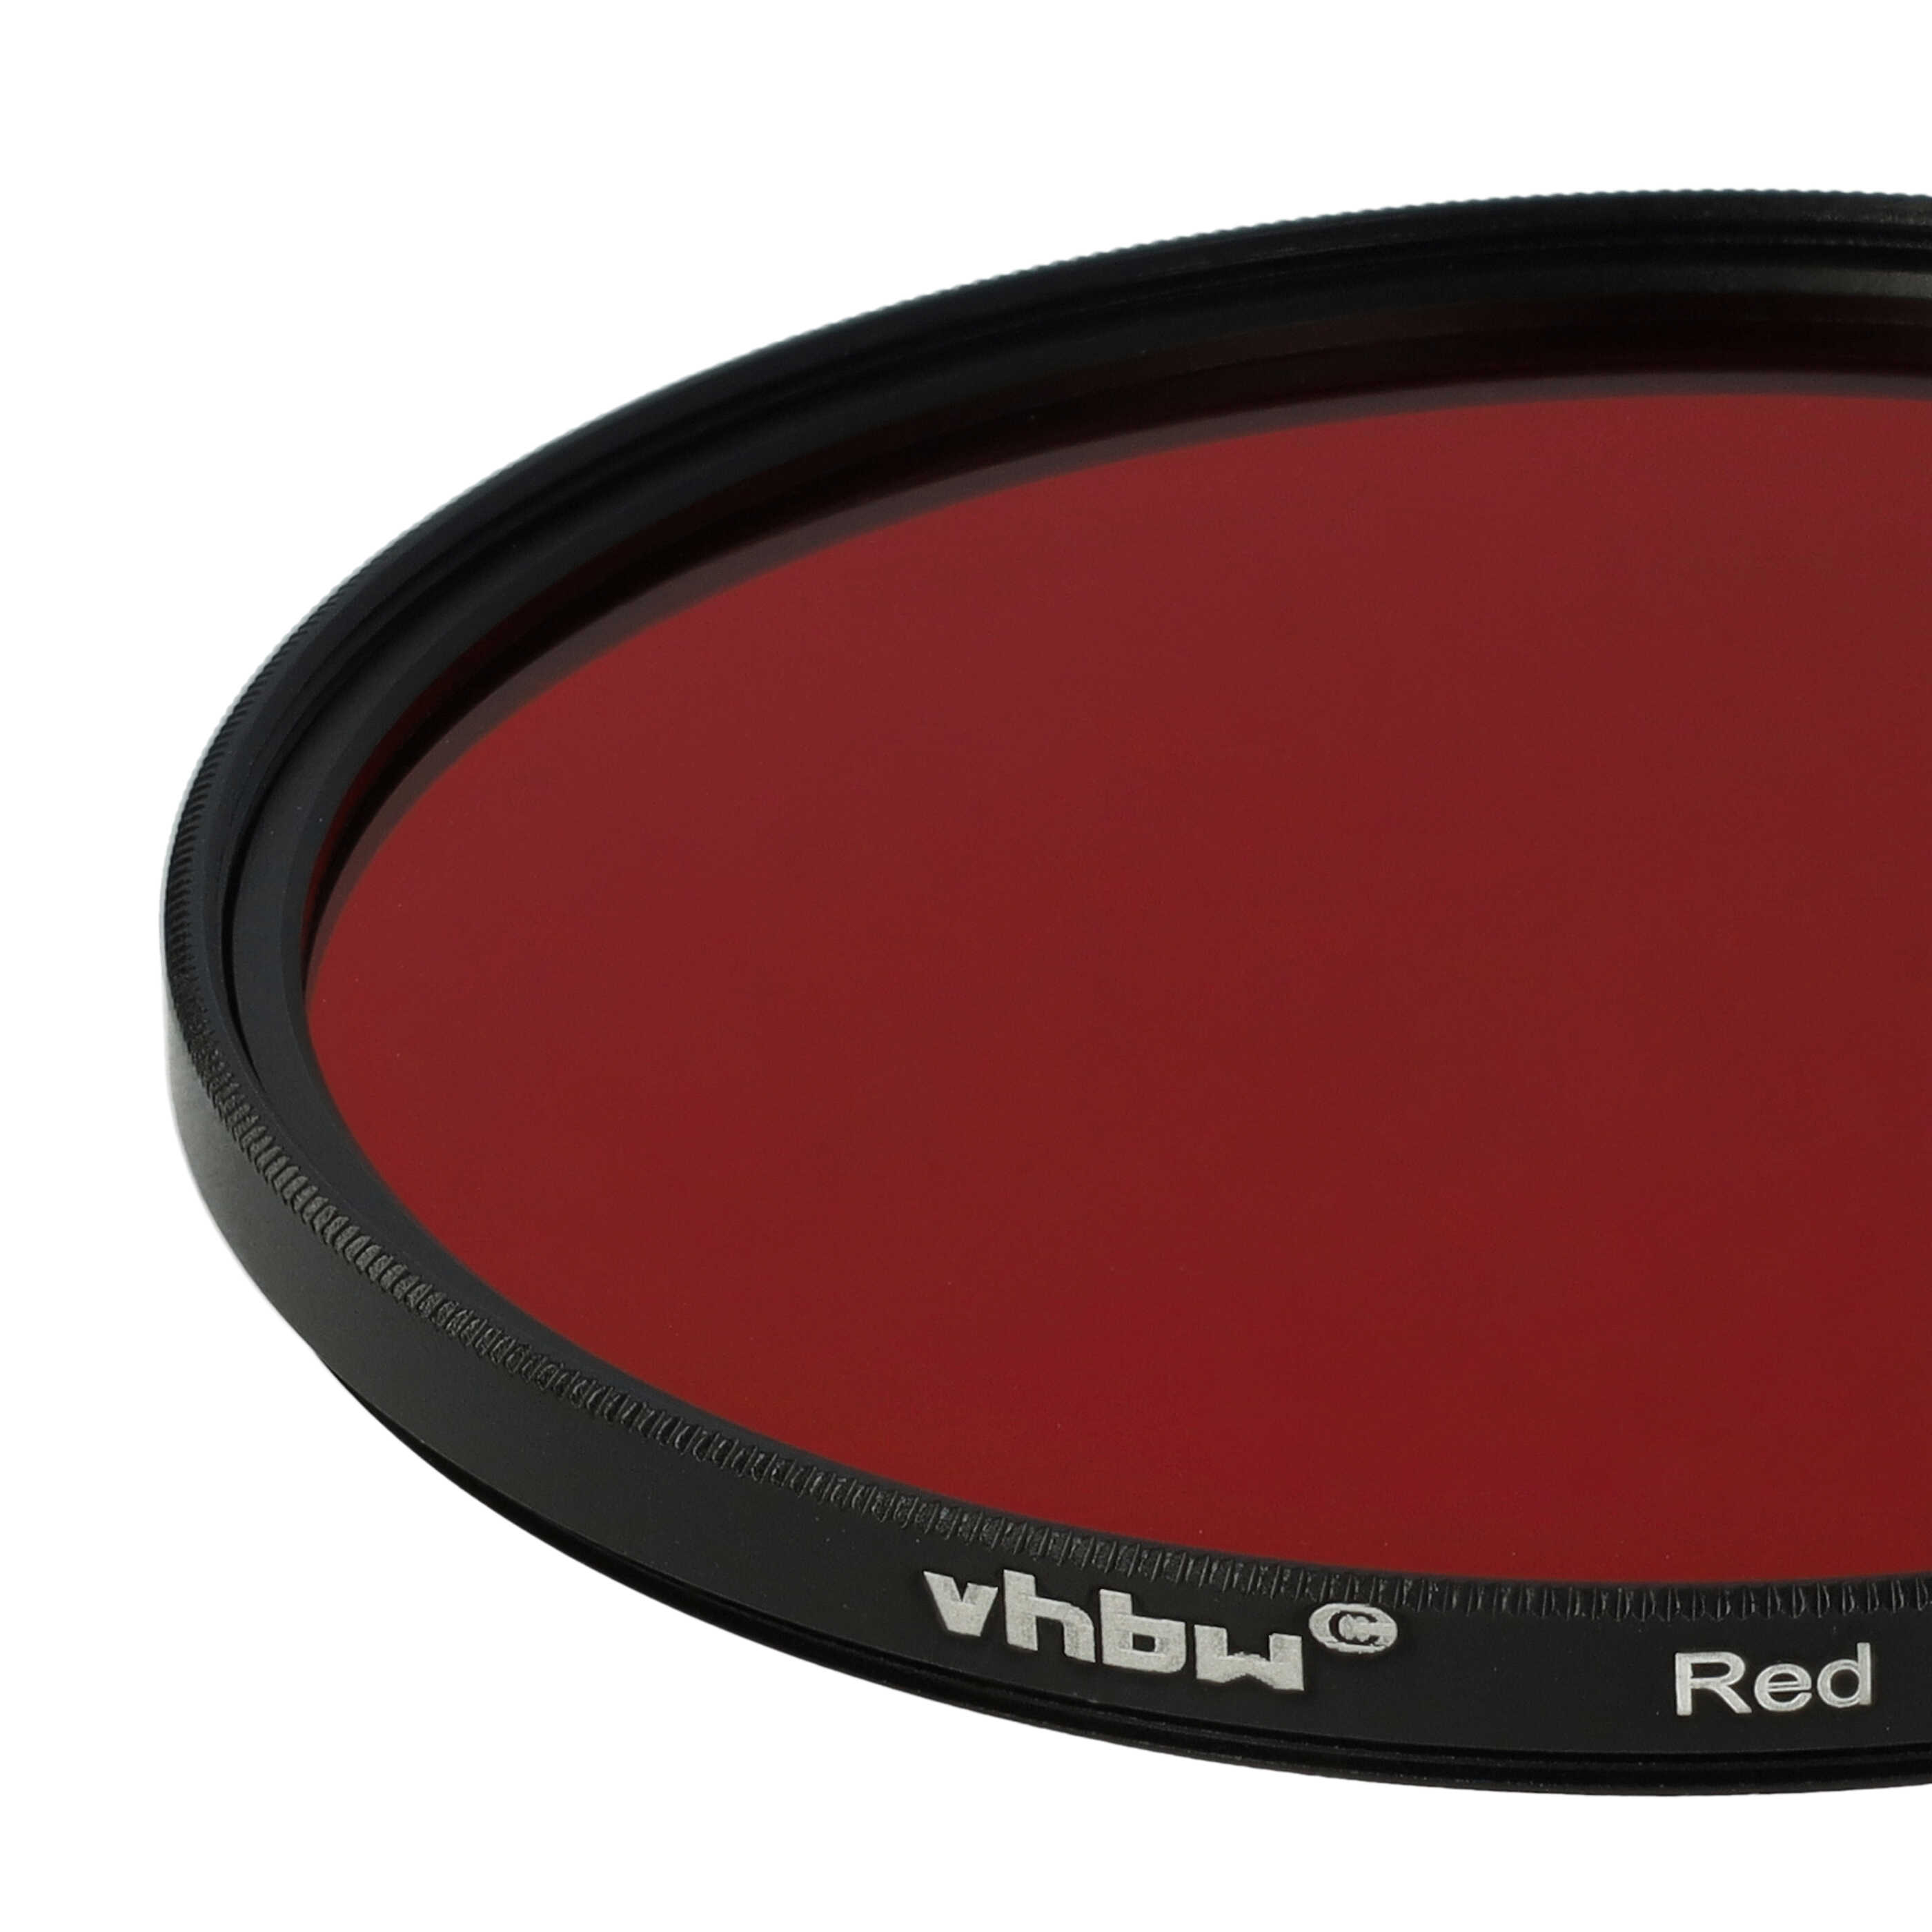 Filtre de couleur rouge pour objectifs d'appareils photo de 77 mm - Filtre rouge